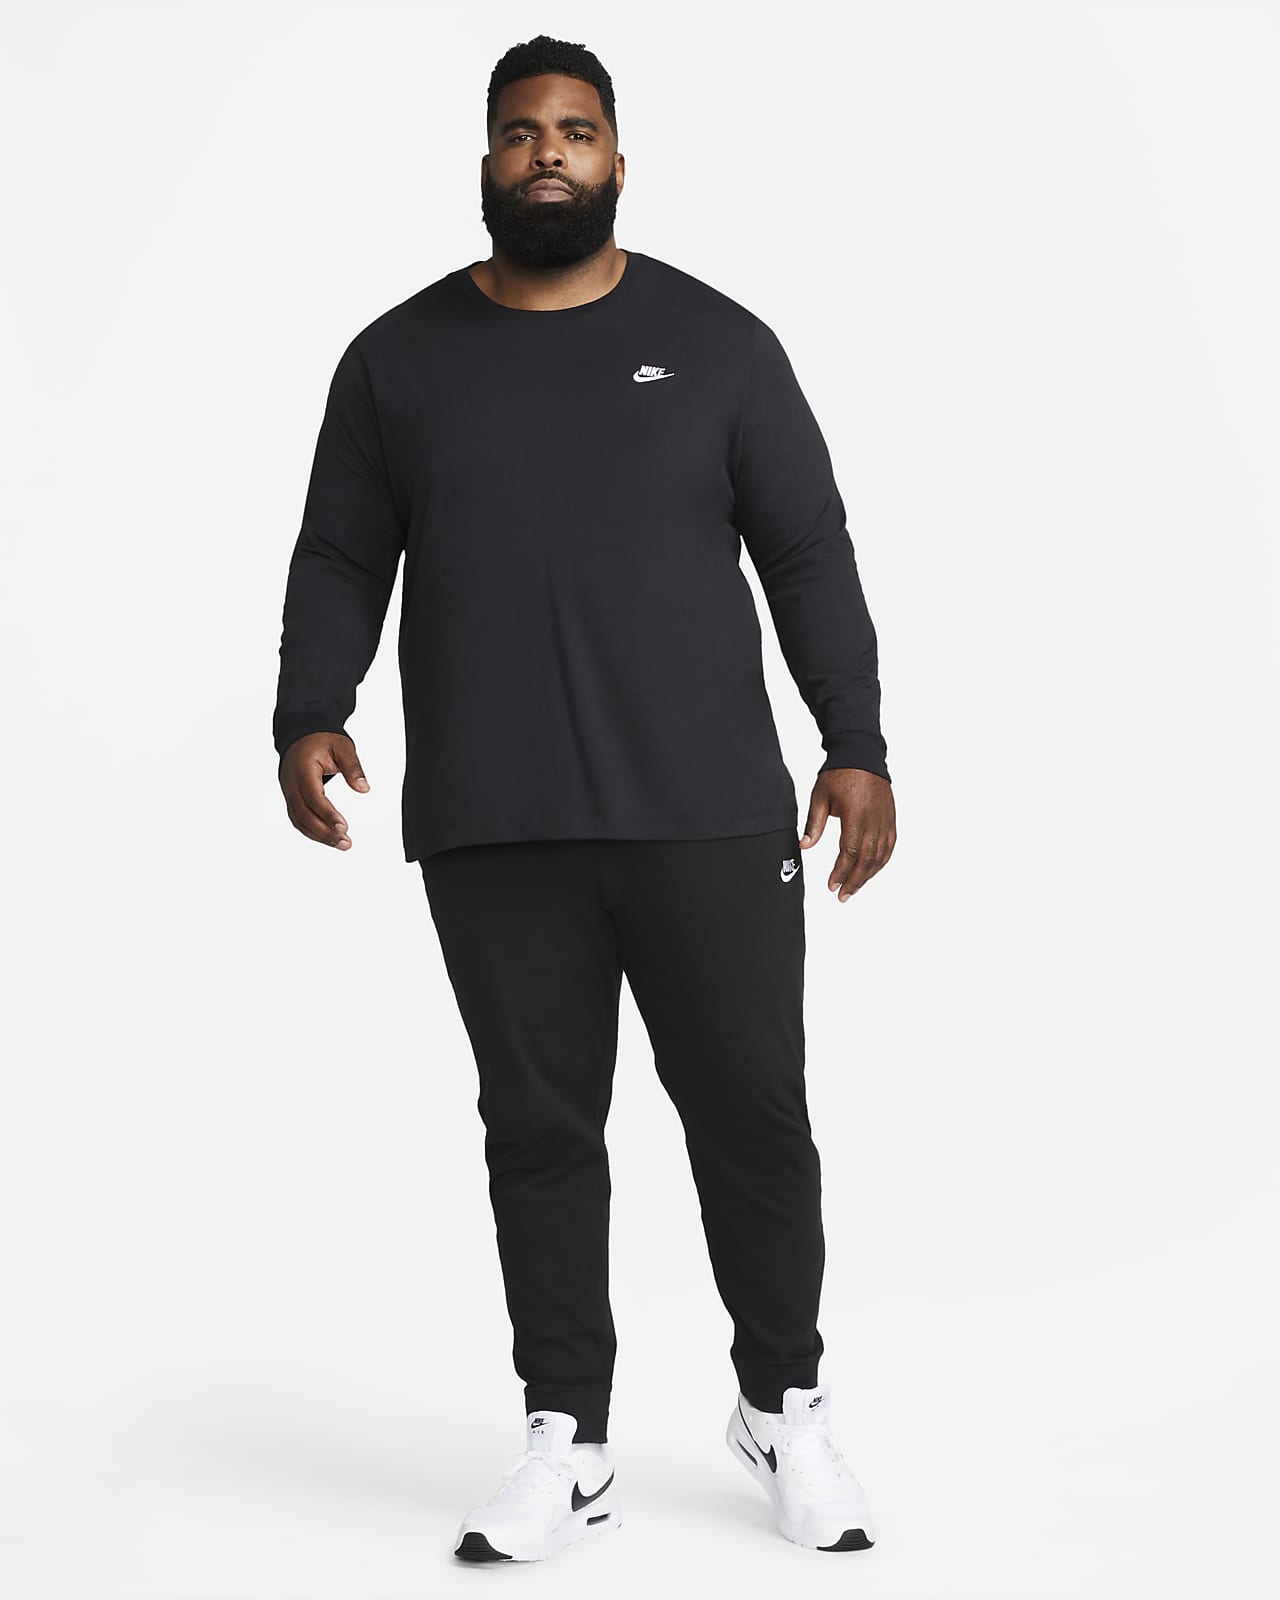 Sportswear Club Fleece joggers, Nike